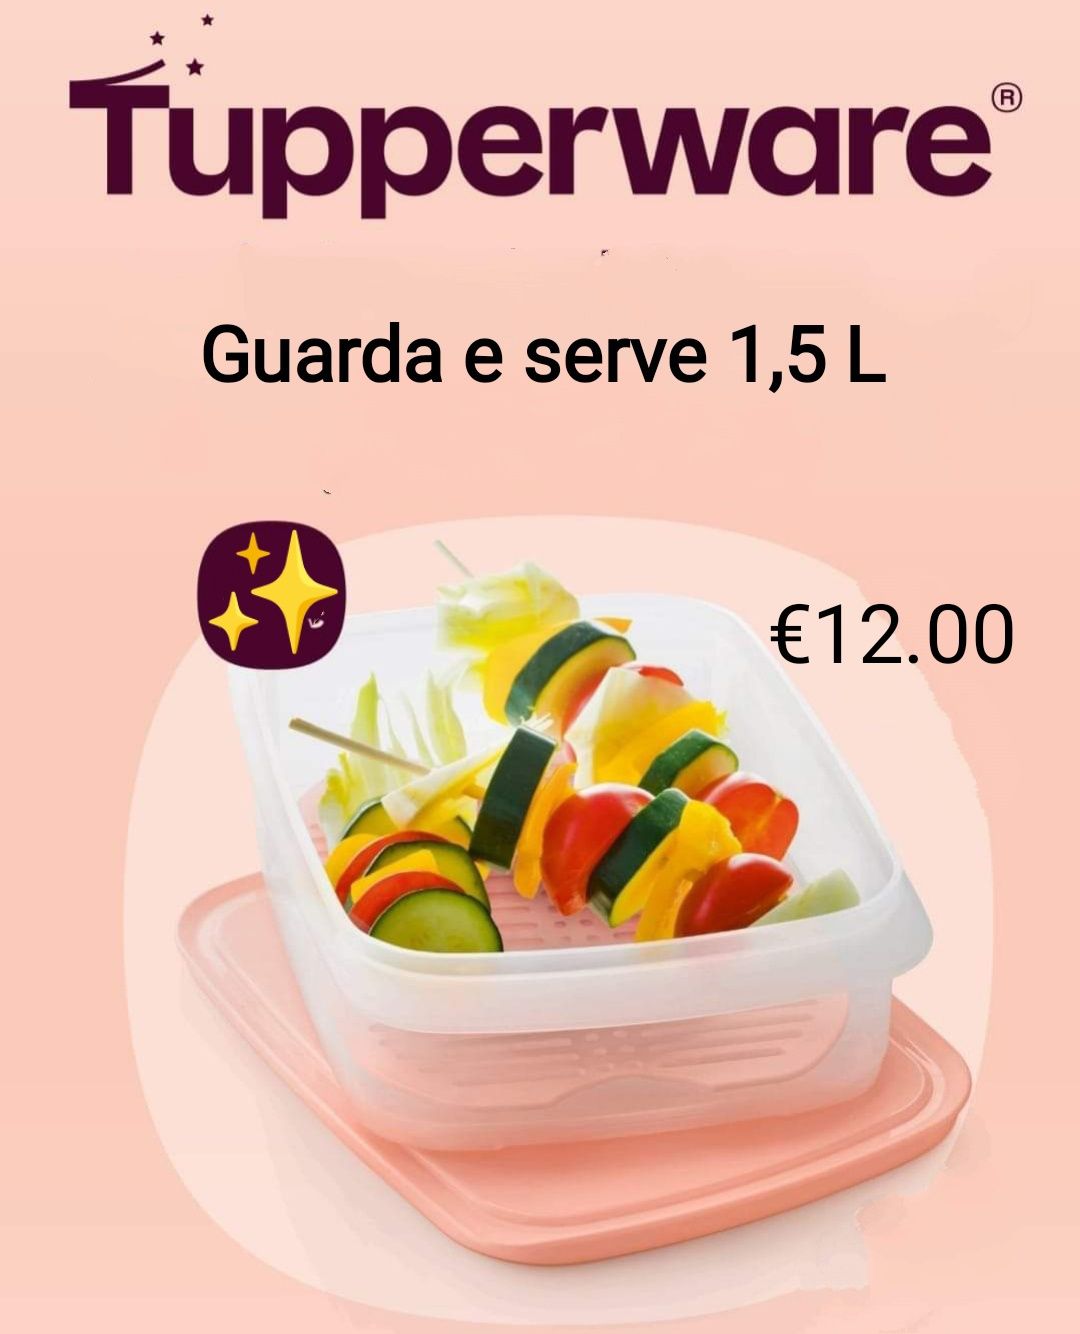 Tupperware varias promoções fantásticas desde €9.00